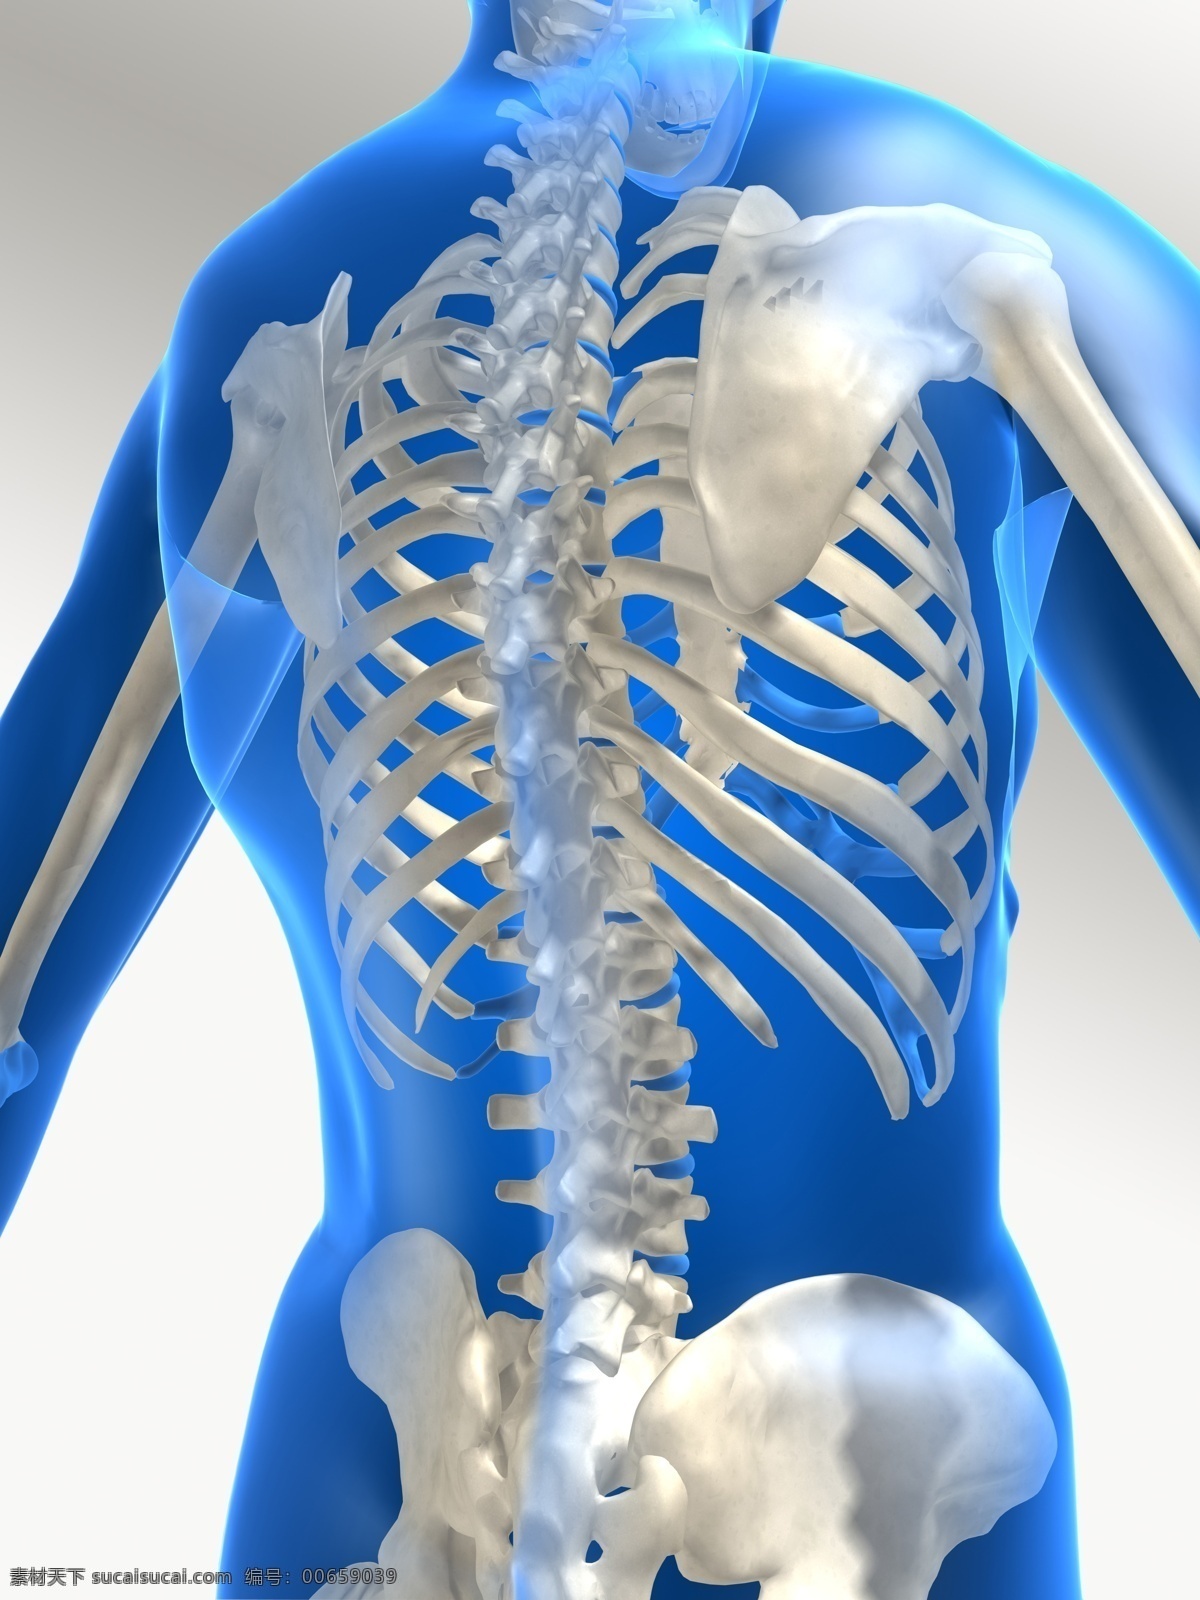 背部透视图 透视 透明 人体 治疗 医学 骨骼 脊椎 胸椎 腰椎 肋骨 髋骨 盆骨 肩胛骨 腰部 背部 臀部 x光 透视人体图 医疗护理 现代科技